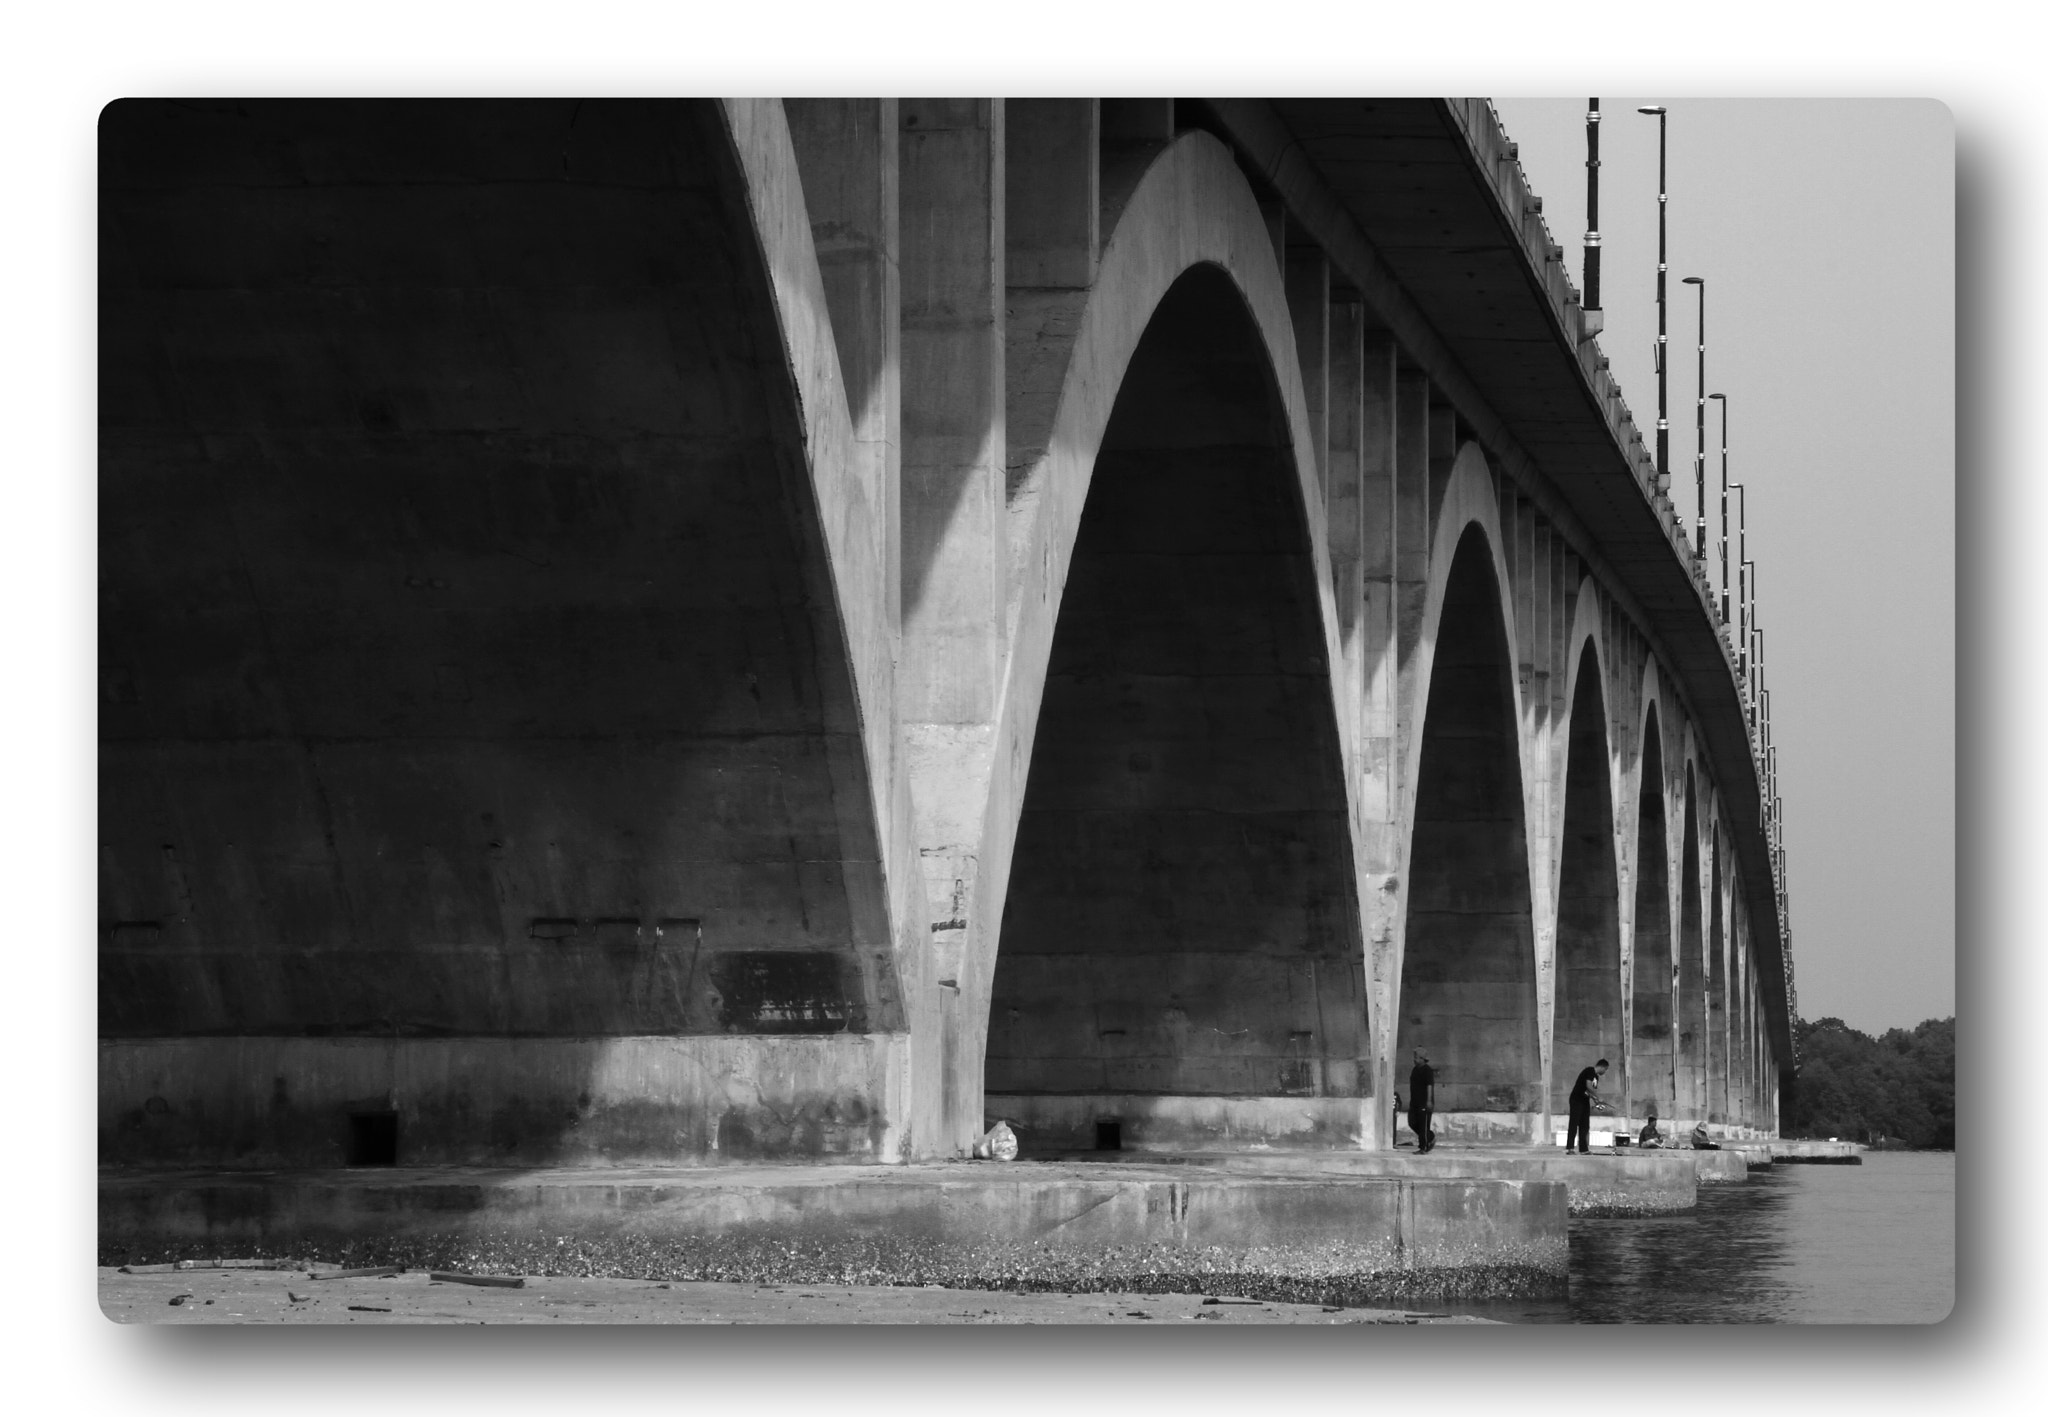 Canon EOS 7D sample photo. Tuanku bainun bridge #01 photography